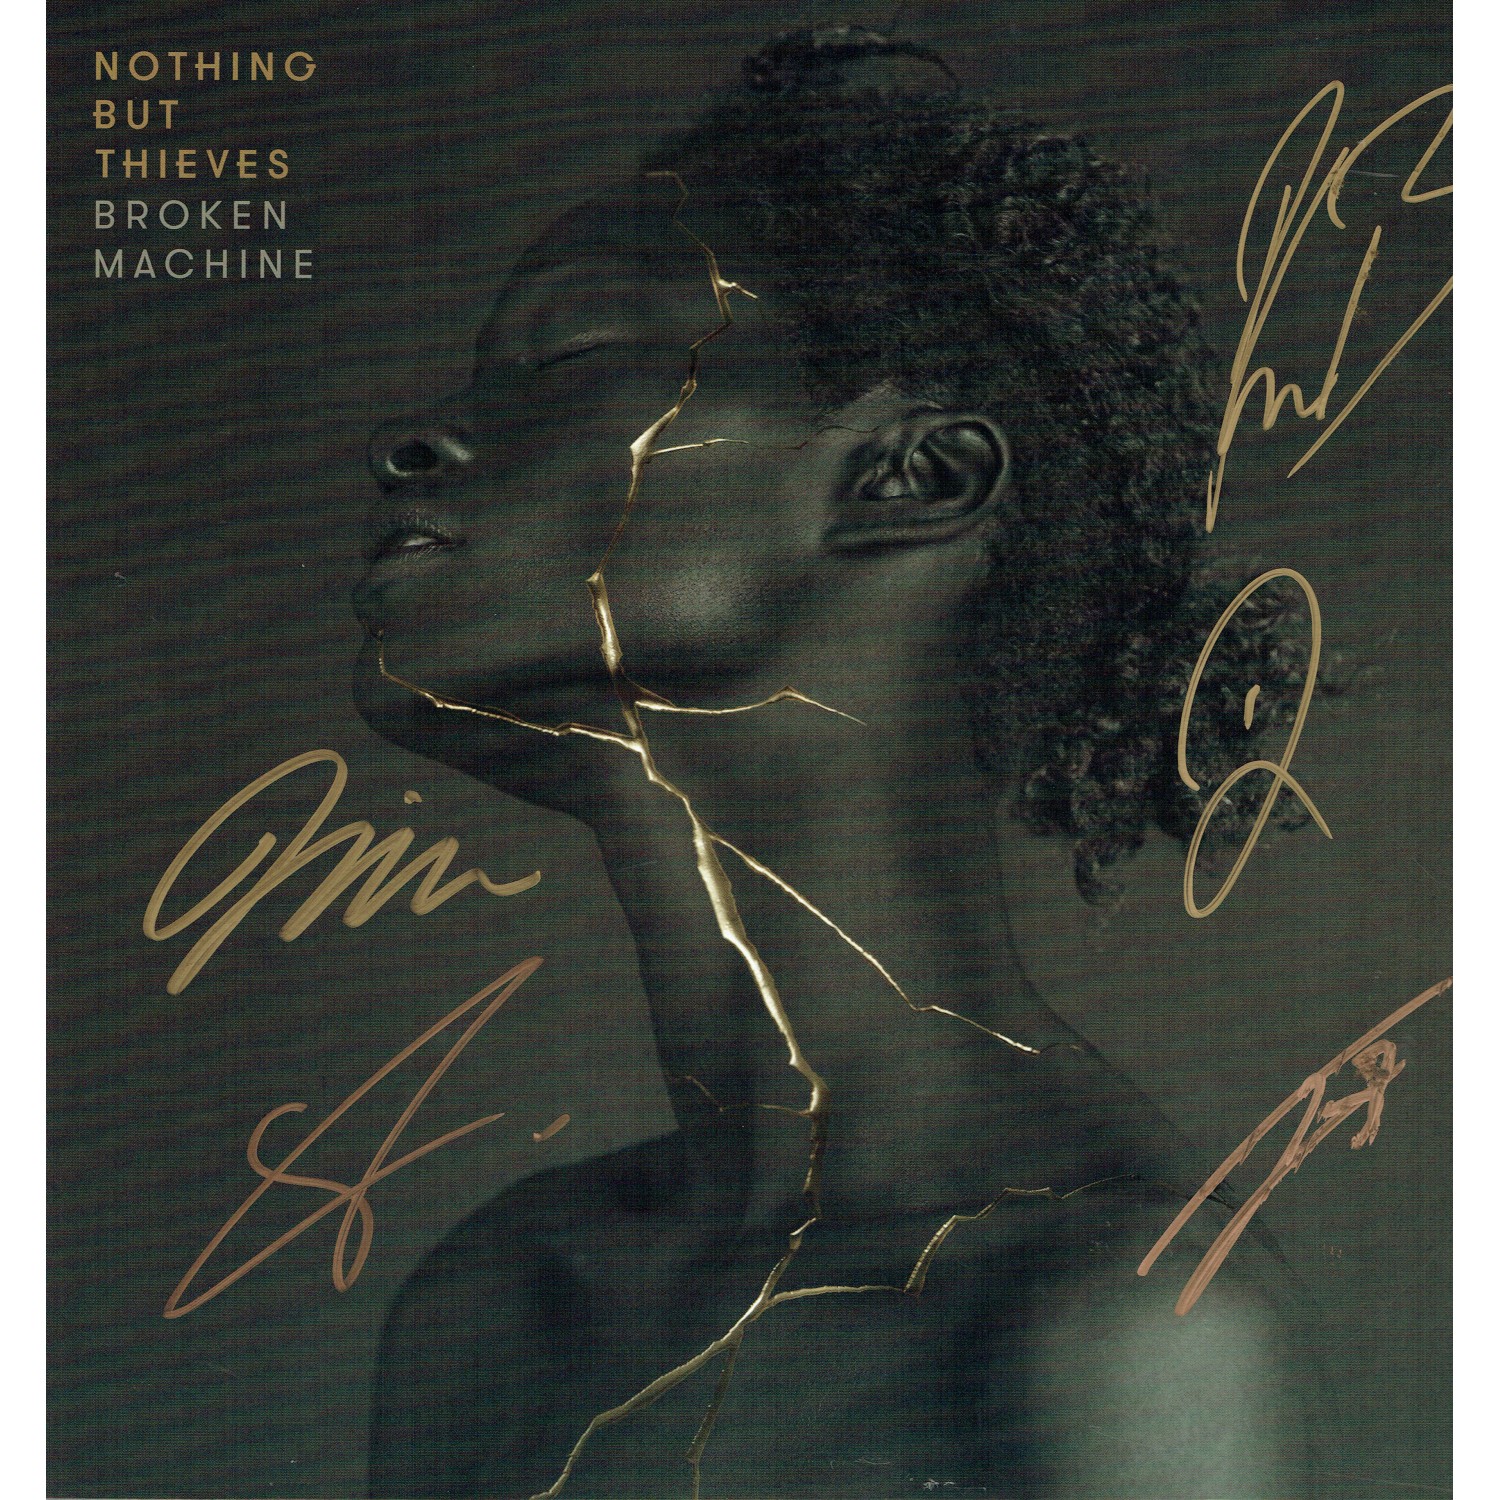 Nothing But Signed Broken Machine Vinyl LP 26202